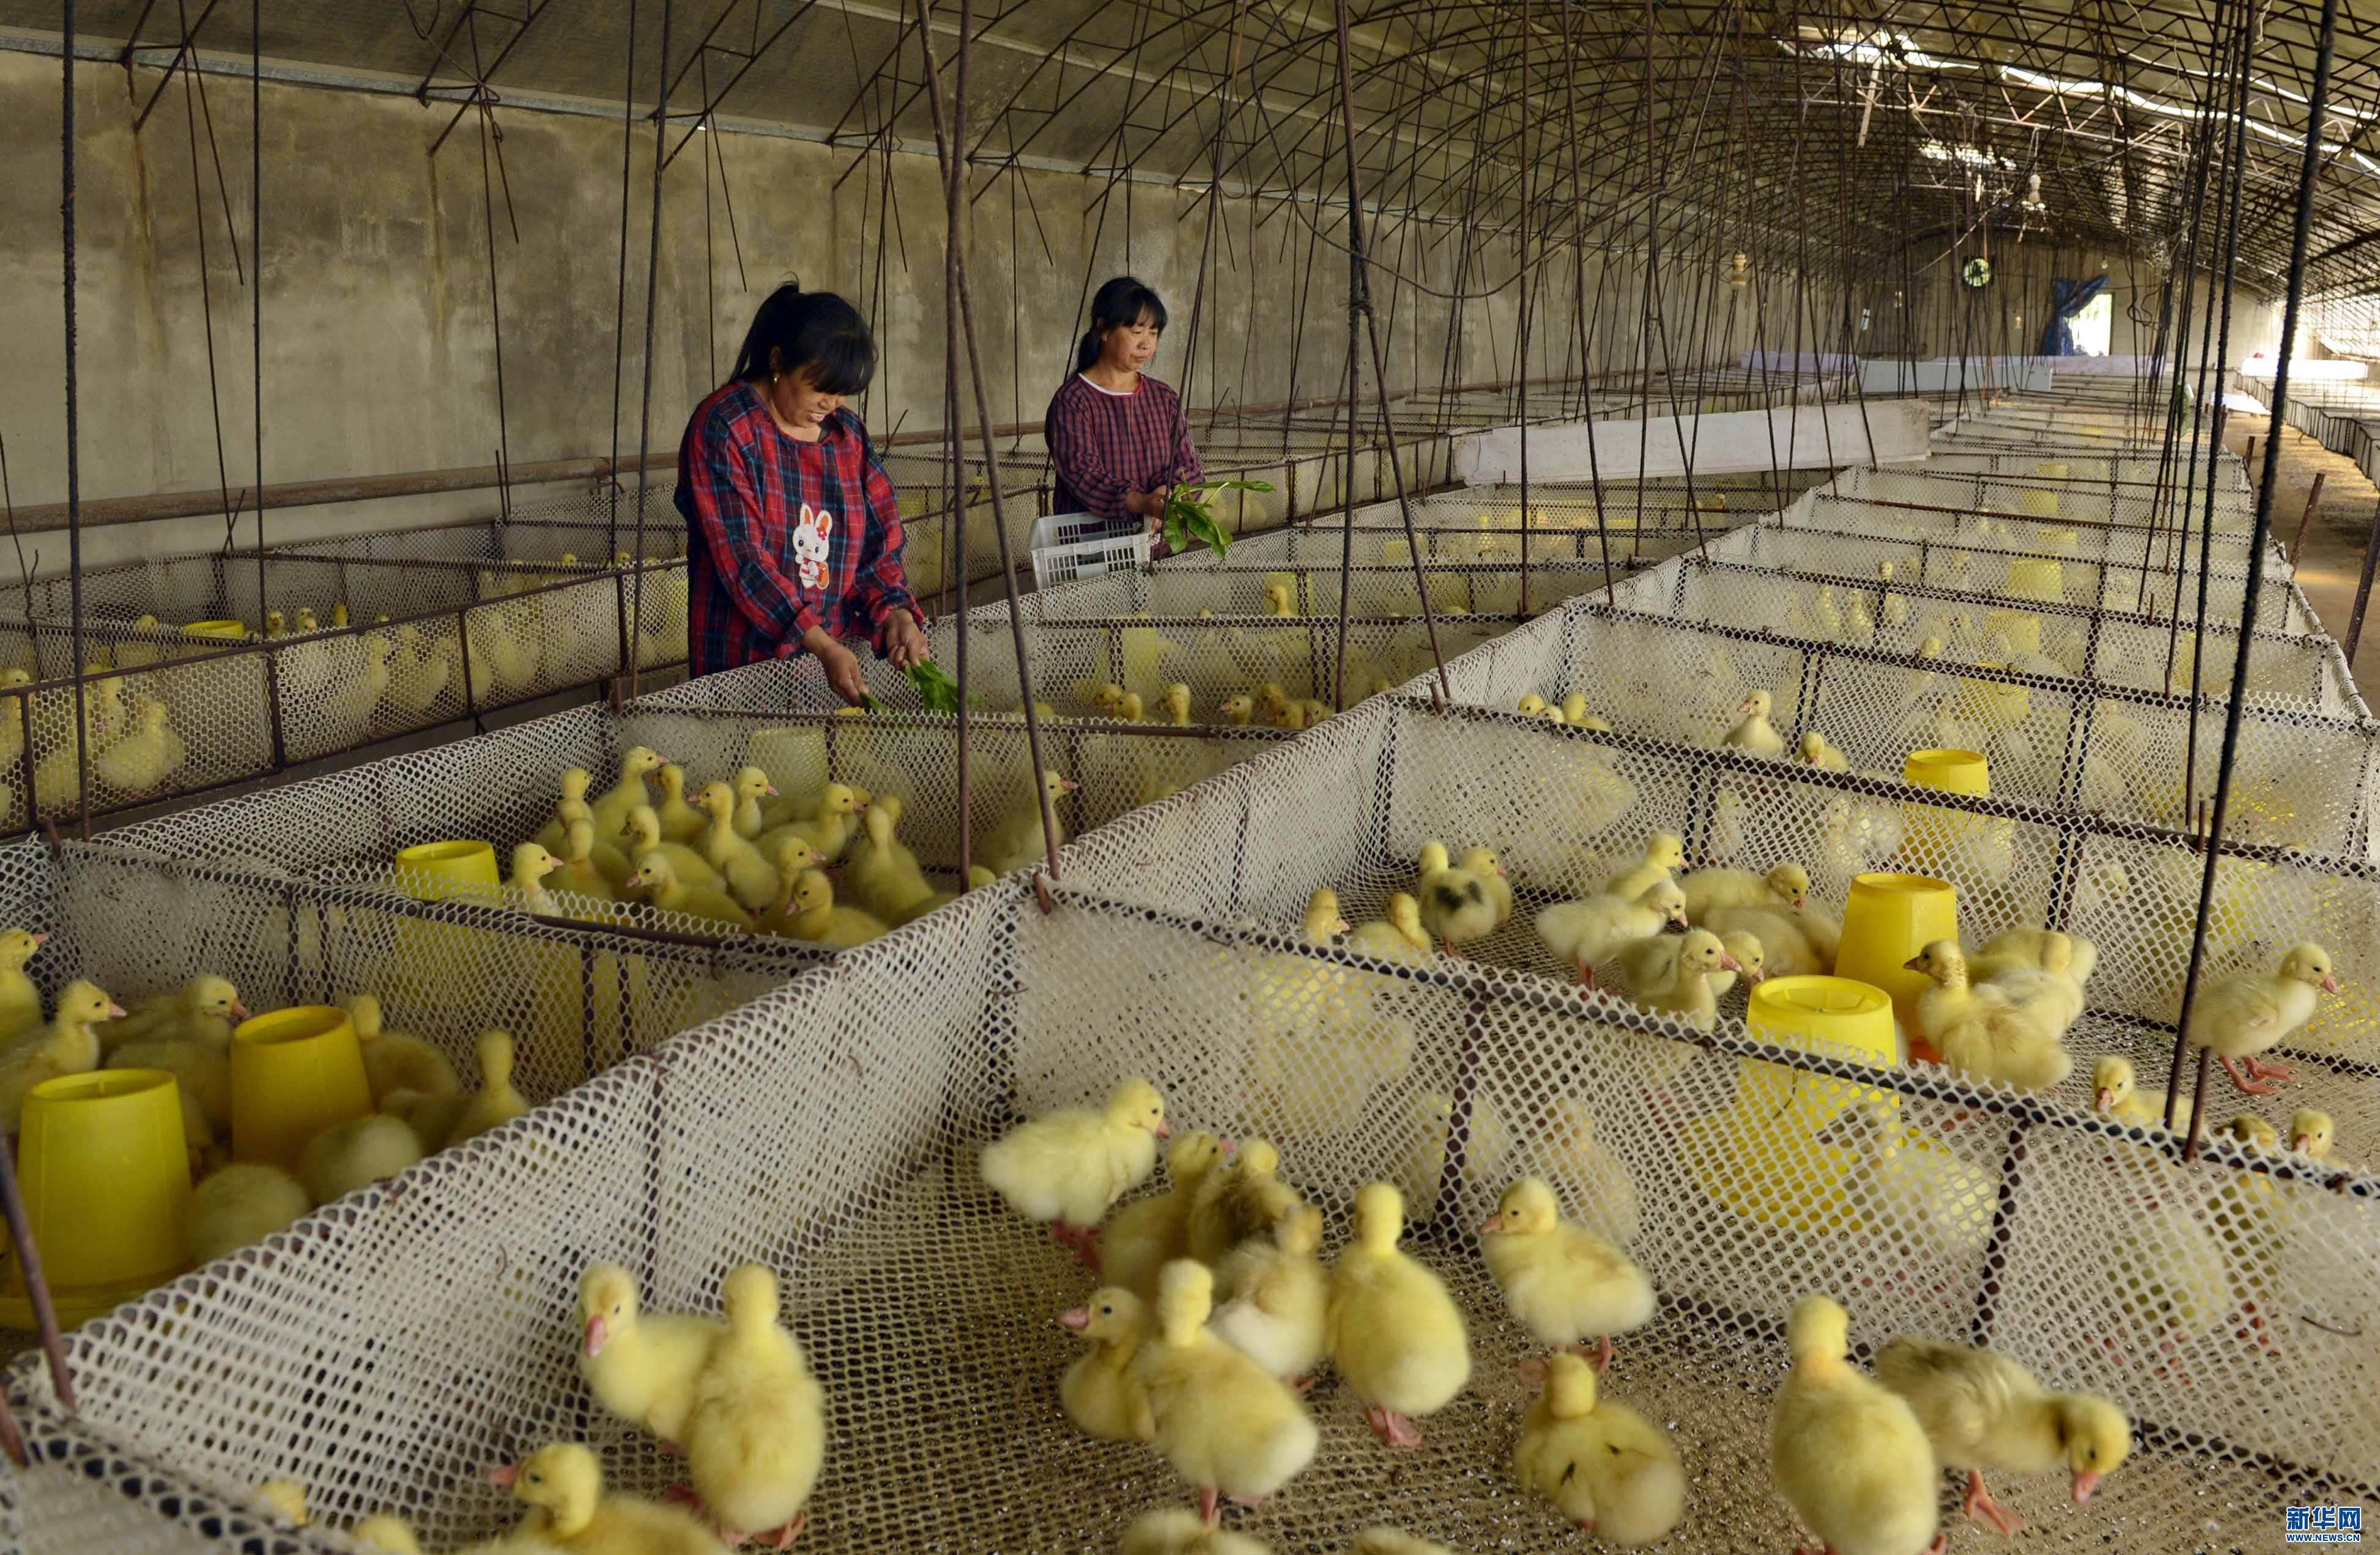 近日,河北省迁安市正农鹅养殖专业合作社孵化的首批5000多只引进的